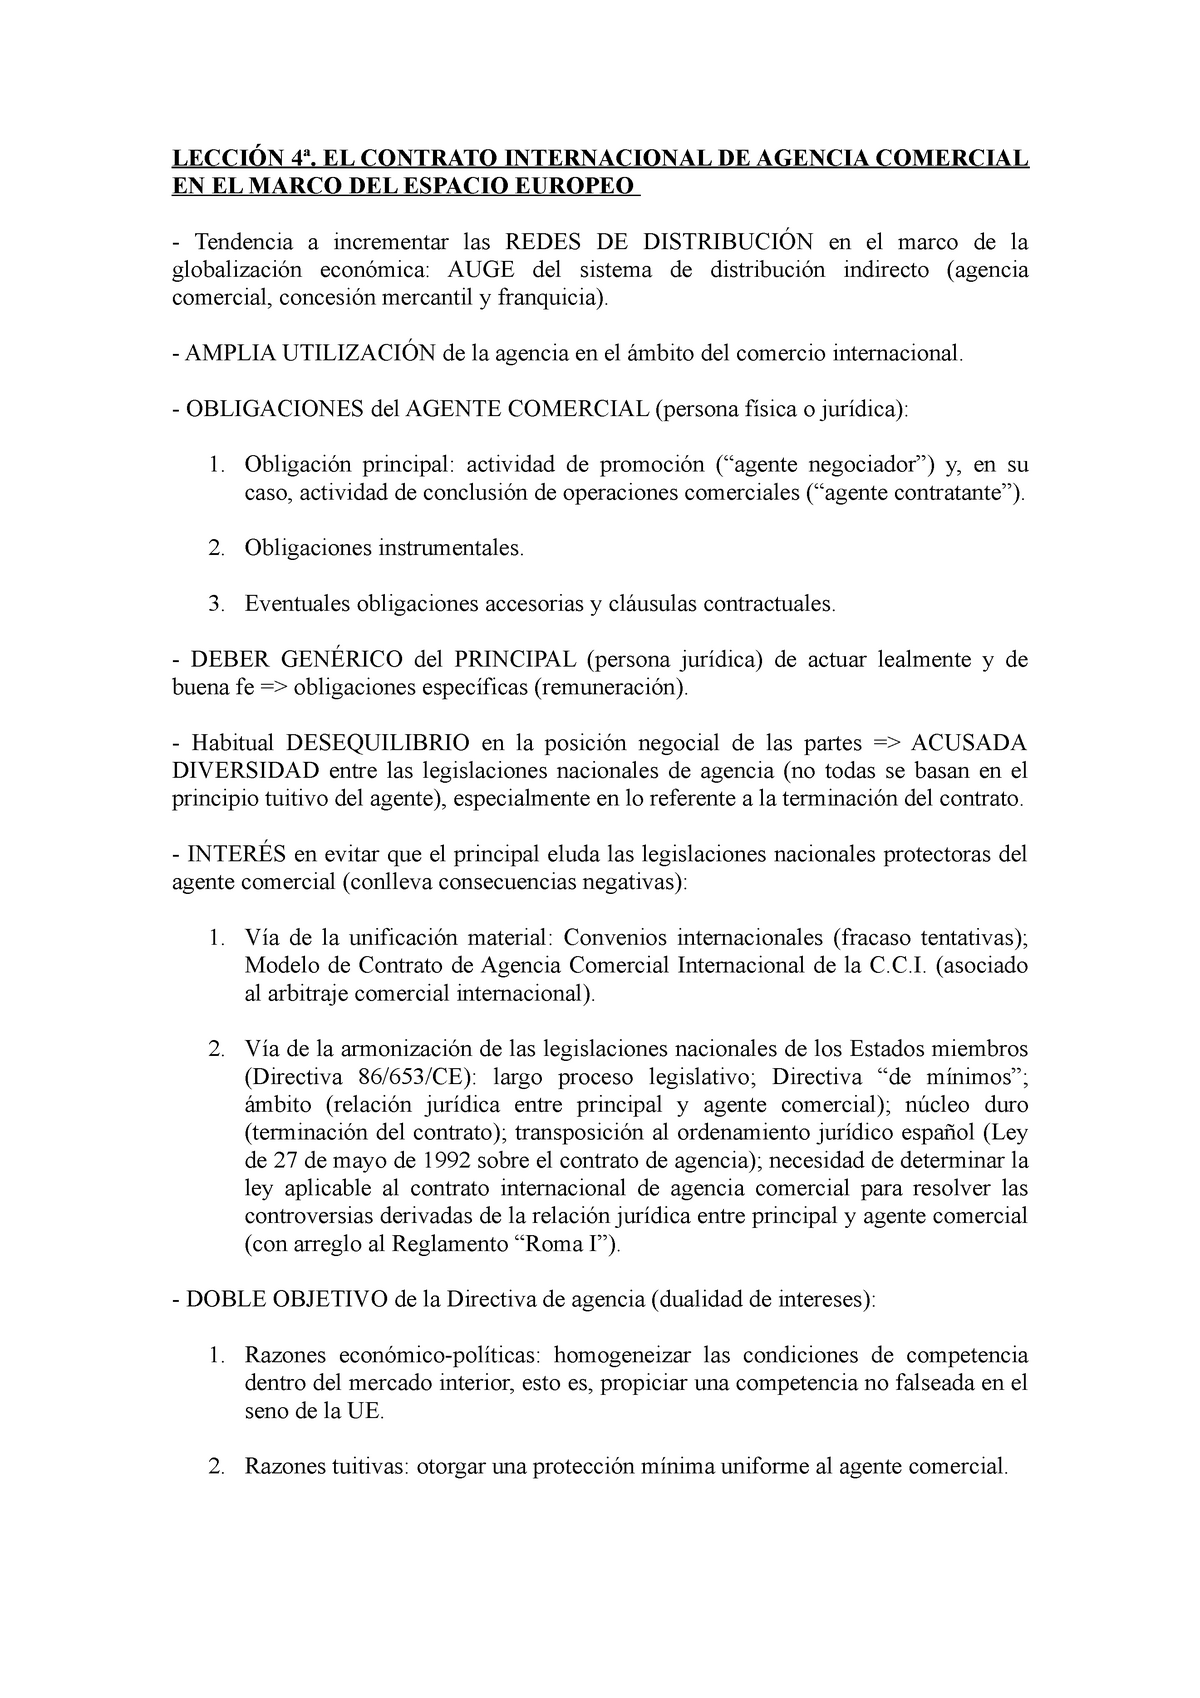 Lección 4ª (contrato internacional de agencia comercial) - Derecho  Internacional. Derecho de la UE - Studocu